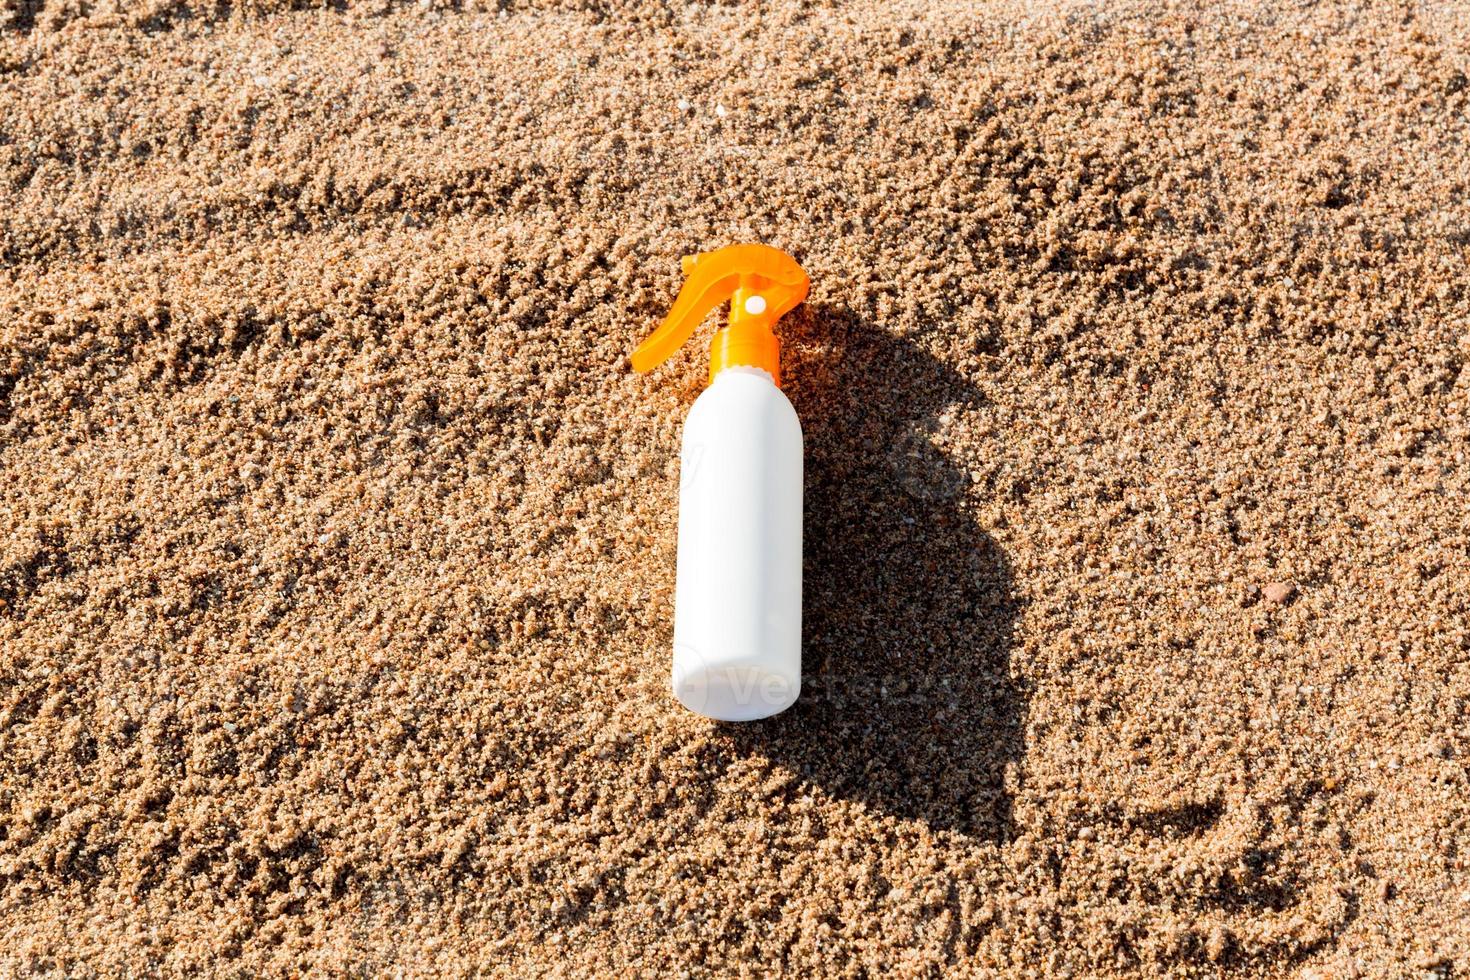 garrafa branca de loção bronzeadora na areia com espaço de cópia. protetor solar spf creme na praia do mar no conceito de férias de verão foto